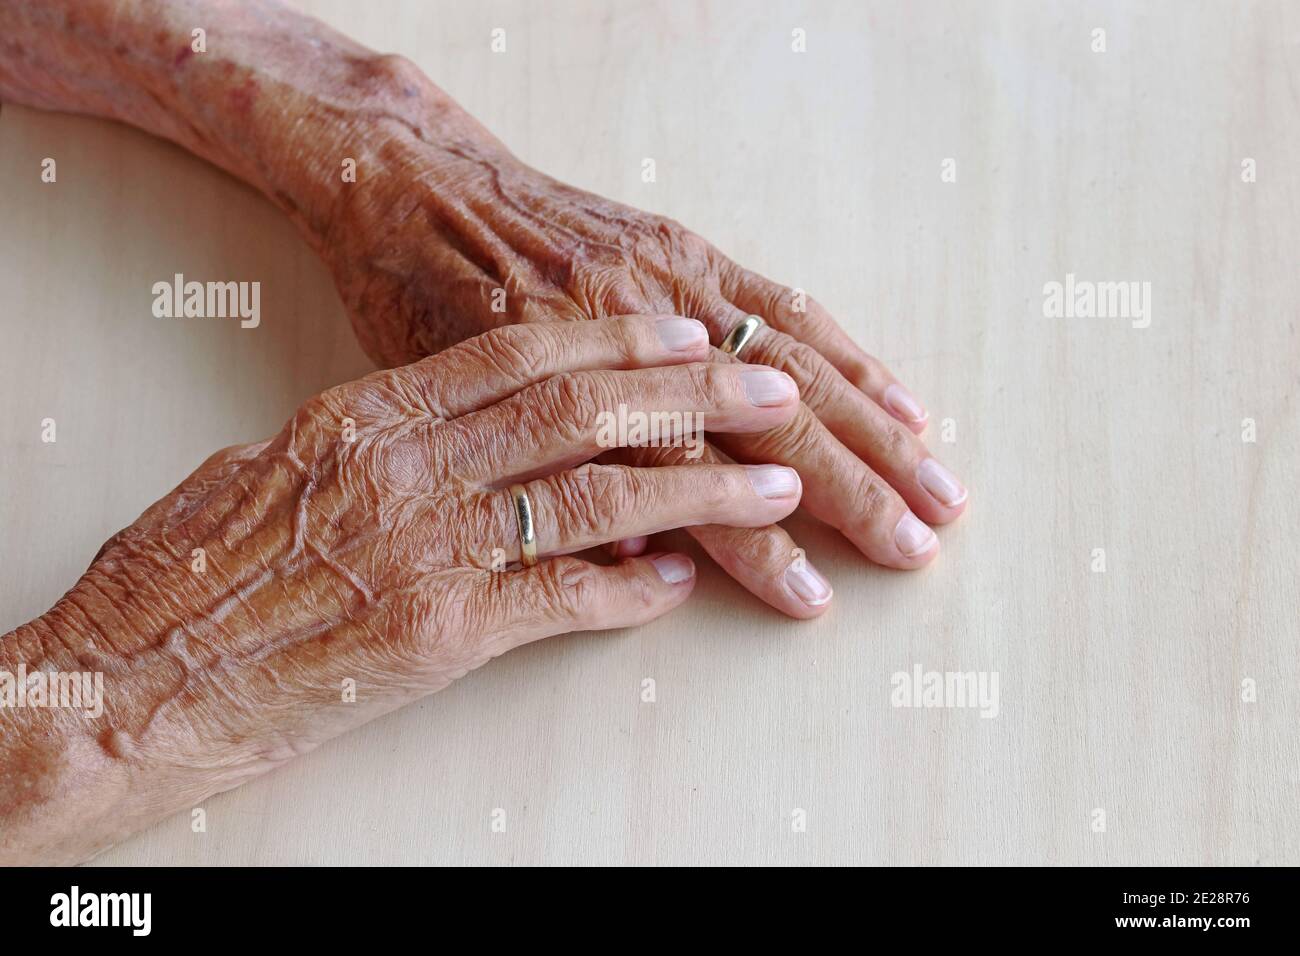 https://c8.alamy.com/comp/2E28R76/the-hands-of-a-very-old-woman-old-womans-hands-on-a-table-old-womans-hands-with-veins-2E28R76.jpg